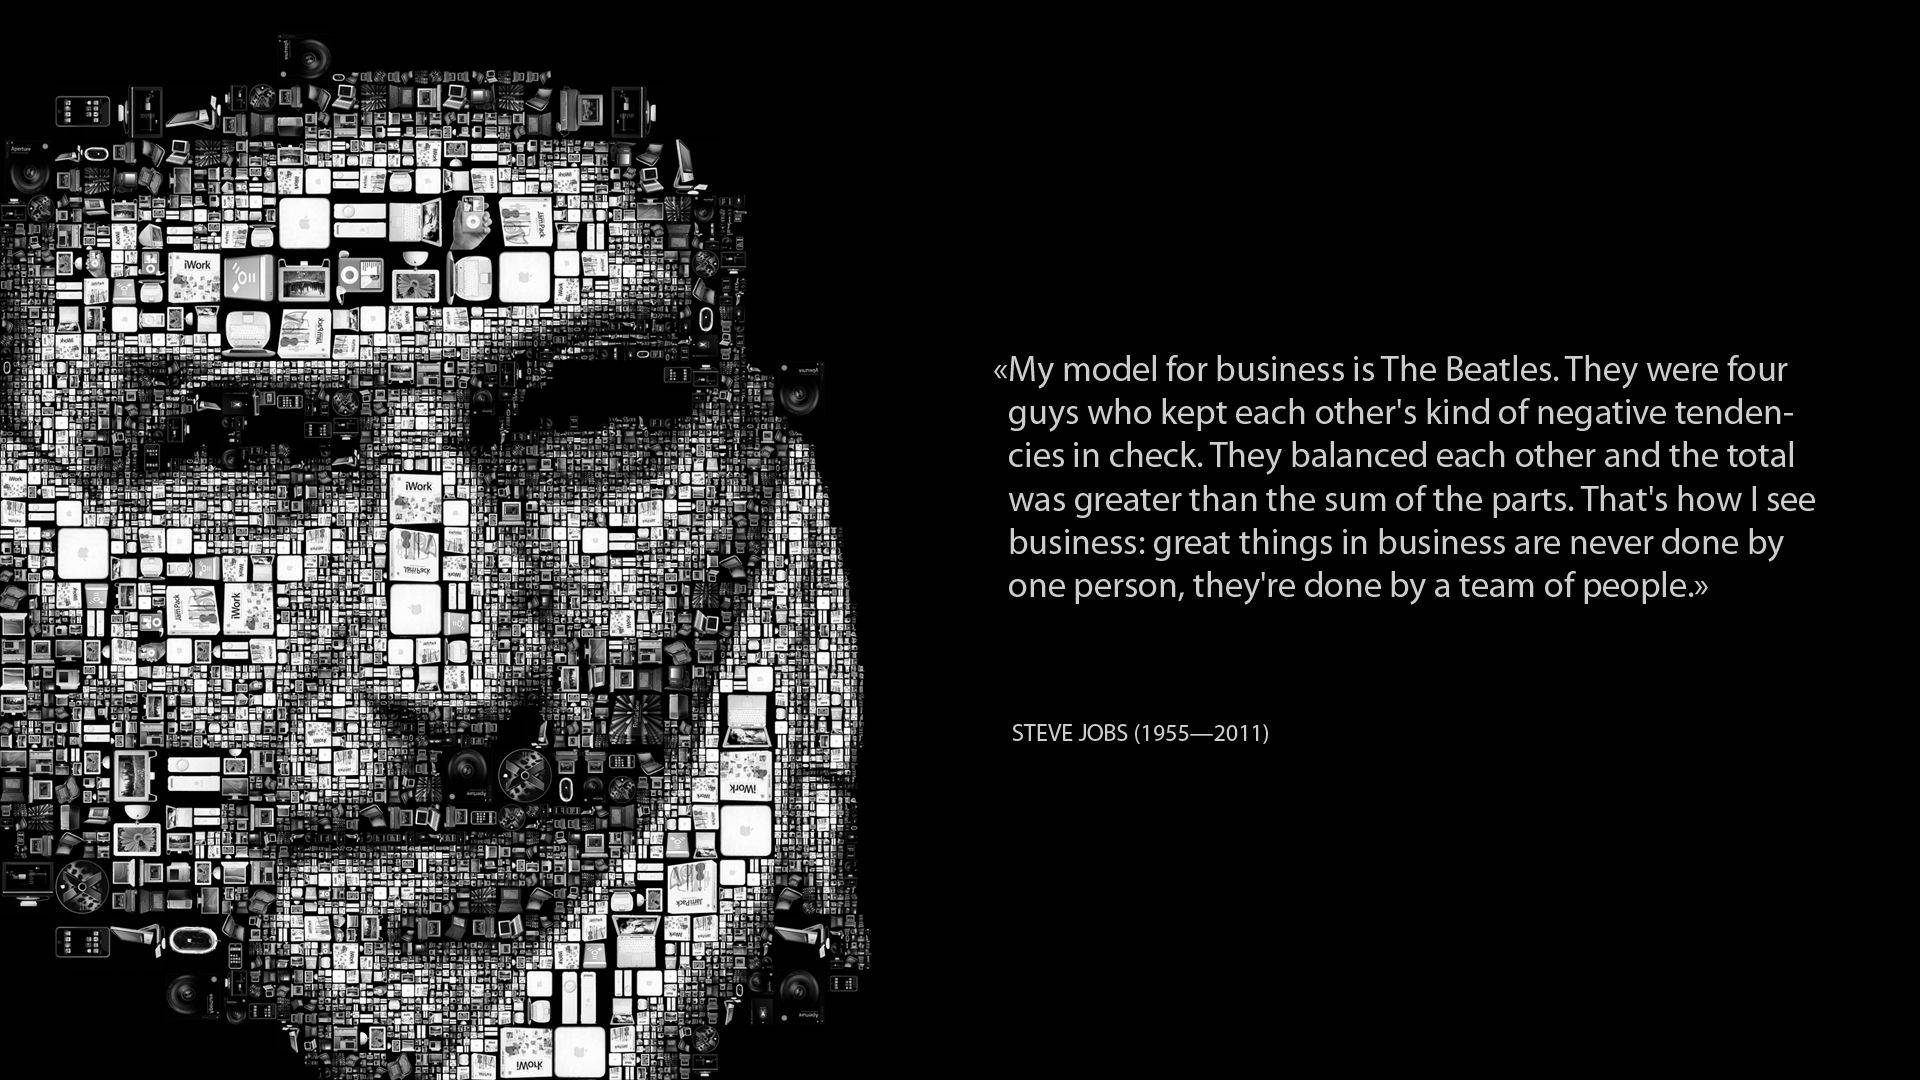 Download Steve Jobs Mosaic Inspirational Wallpaper 